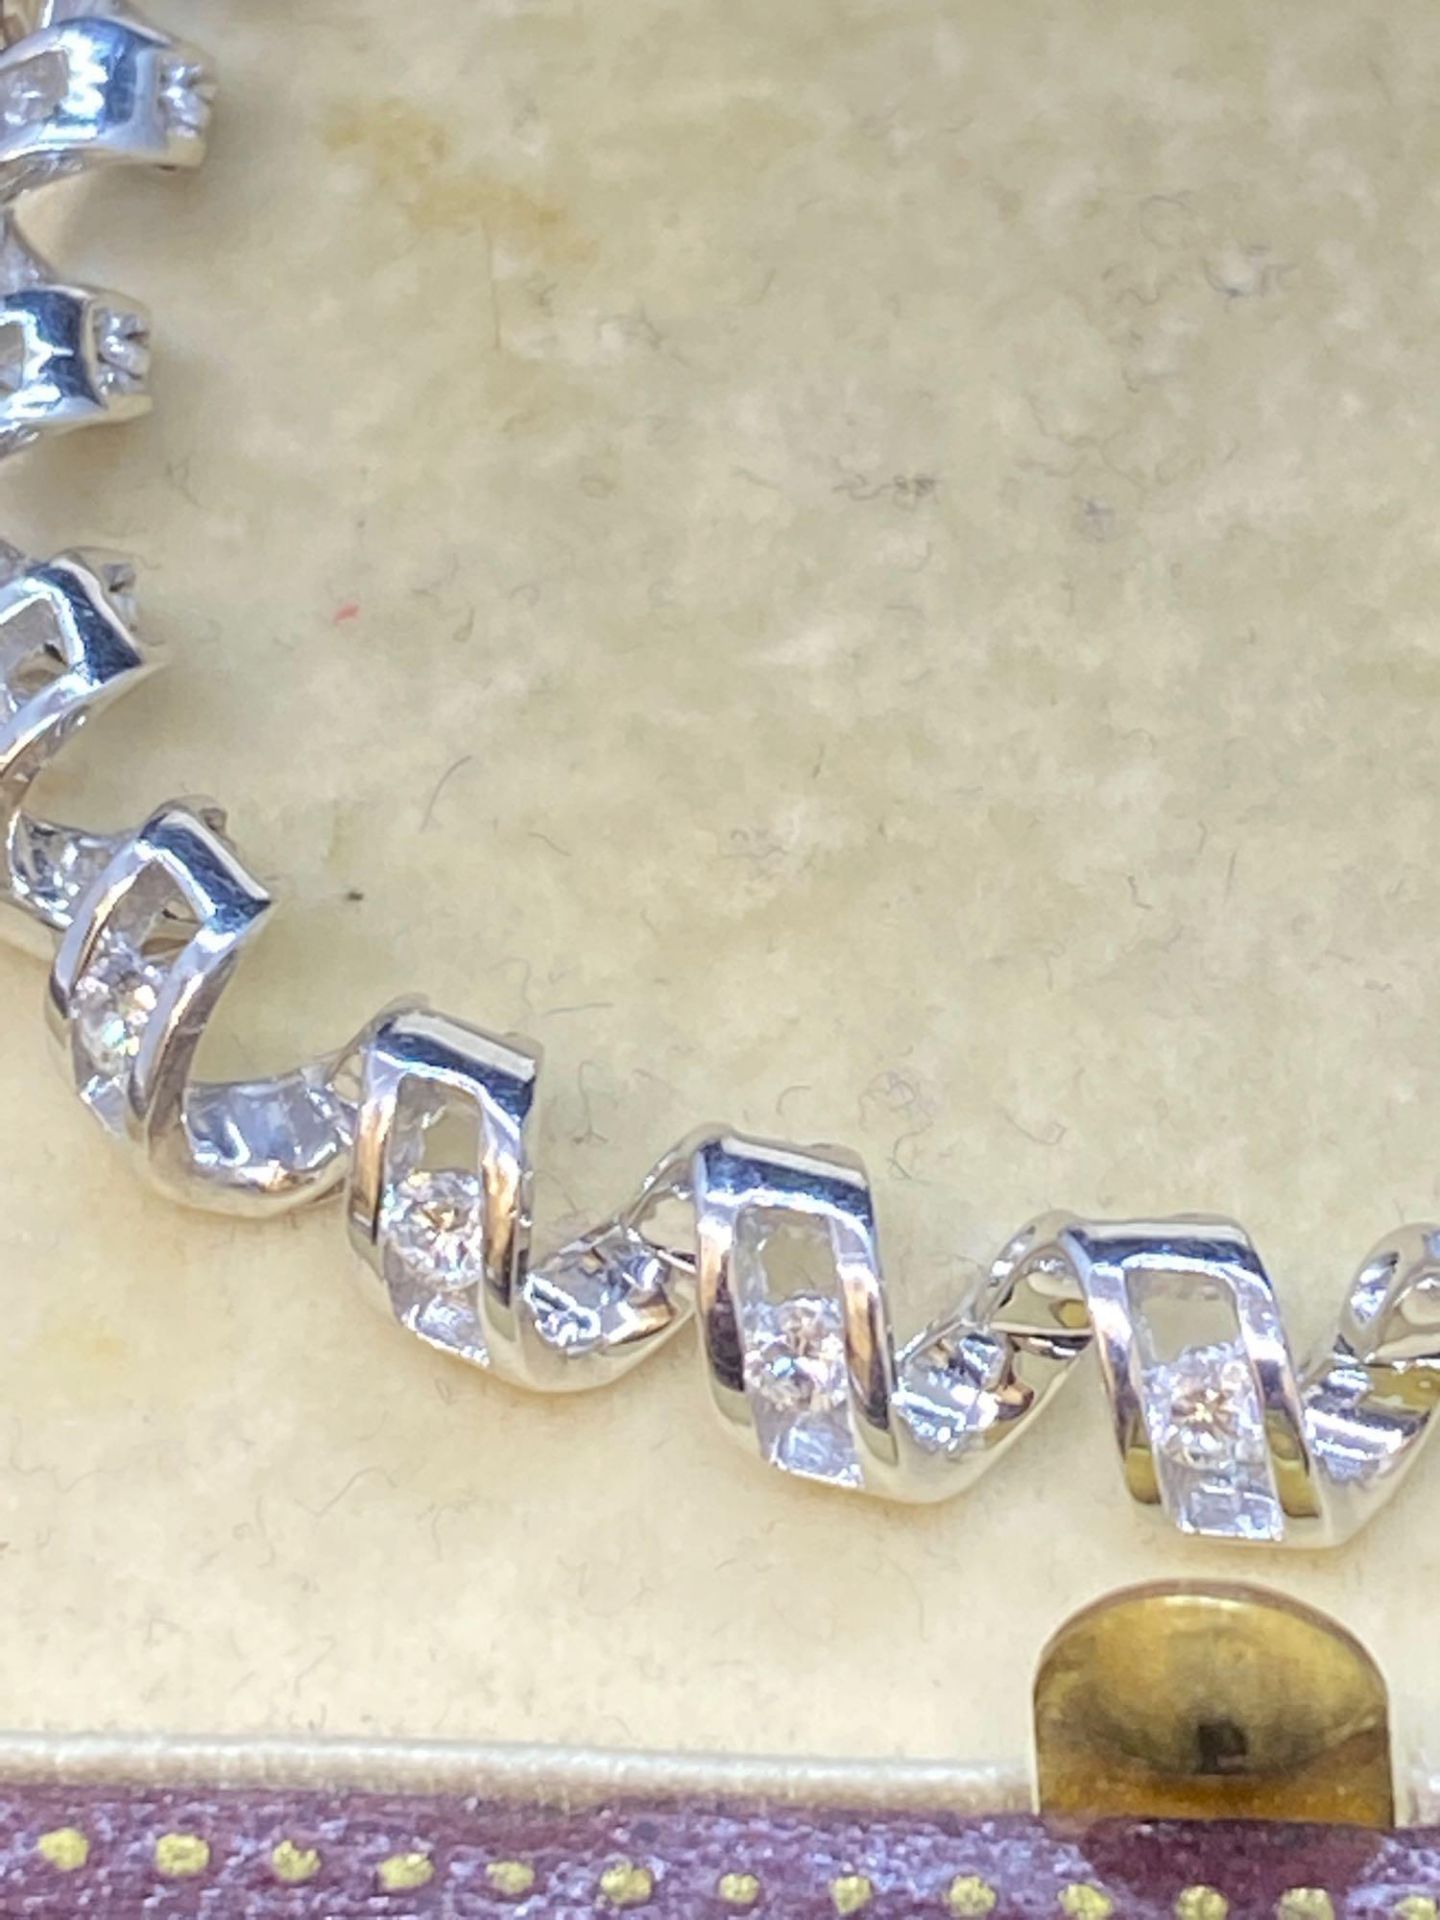 18ct White Gold Spiral Diamond Bracelet - 1.03ct Diamonds G/VS-SI - 16.8 Grams - Image 2 of 3